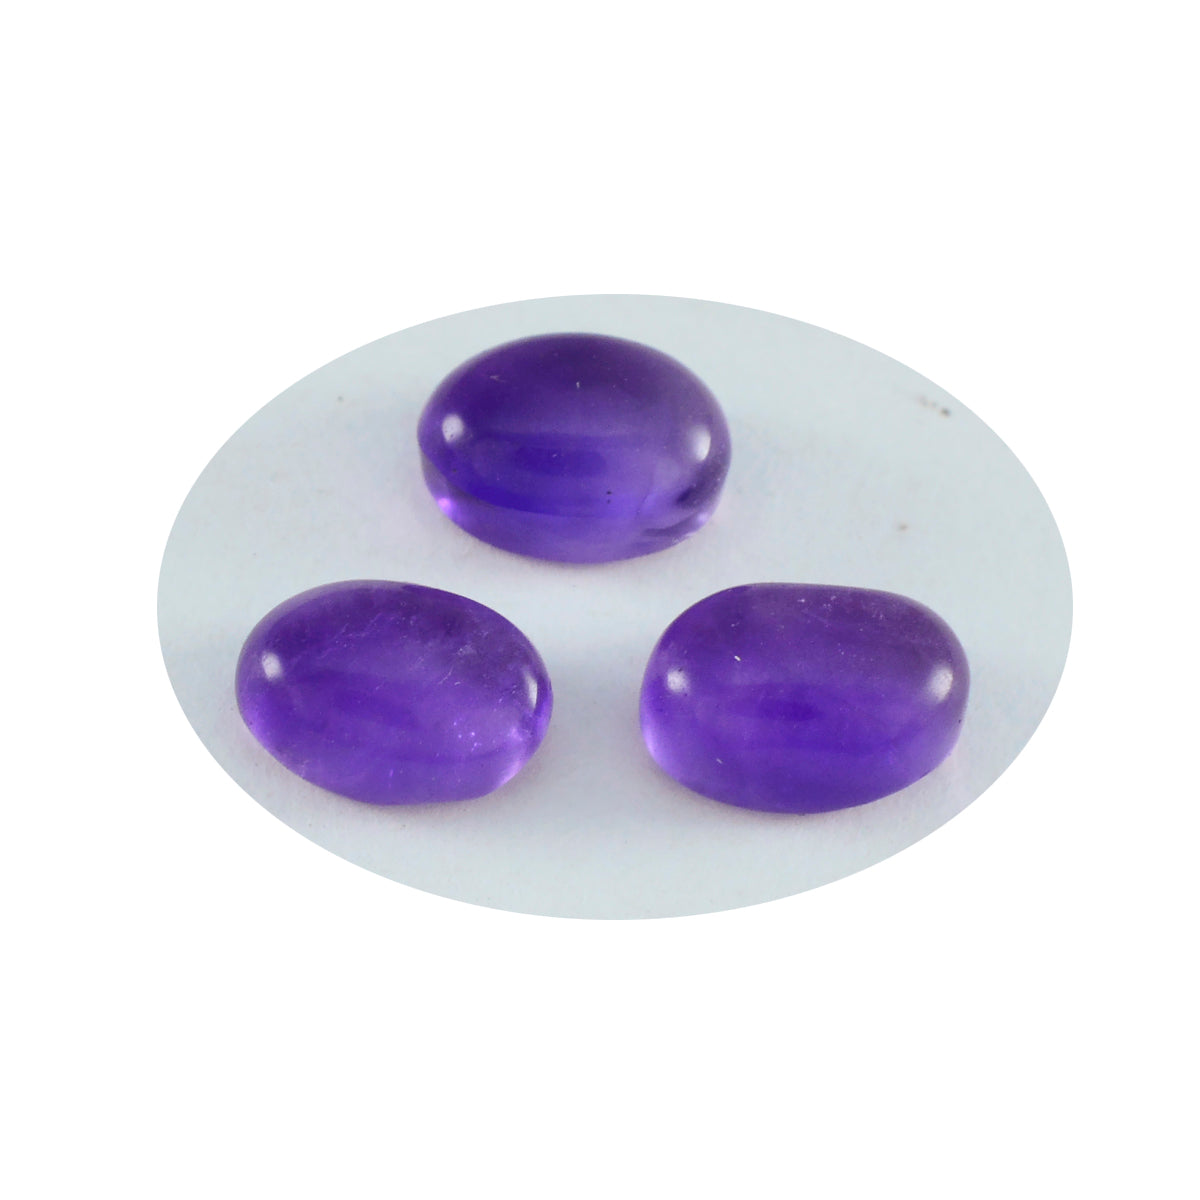 riyogems 1 шт. фиолетовый аметист кабошон 7x9 мм овальной формы, привлекательные качественные свободные драгоценные камни